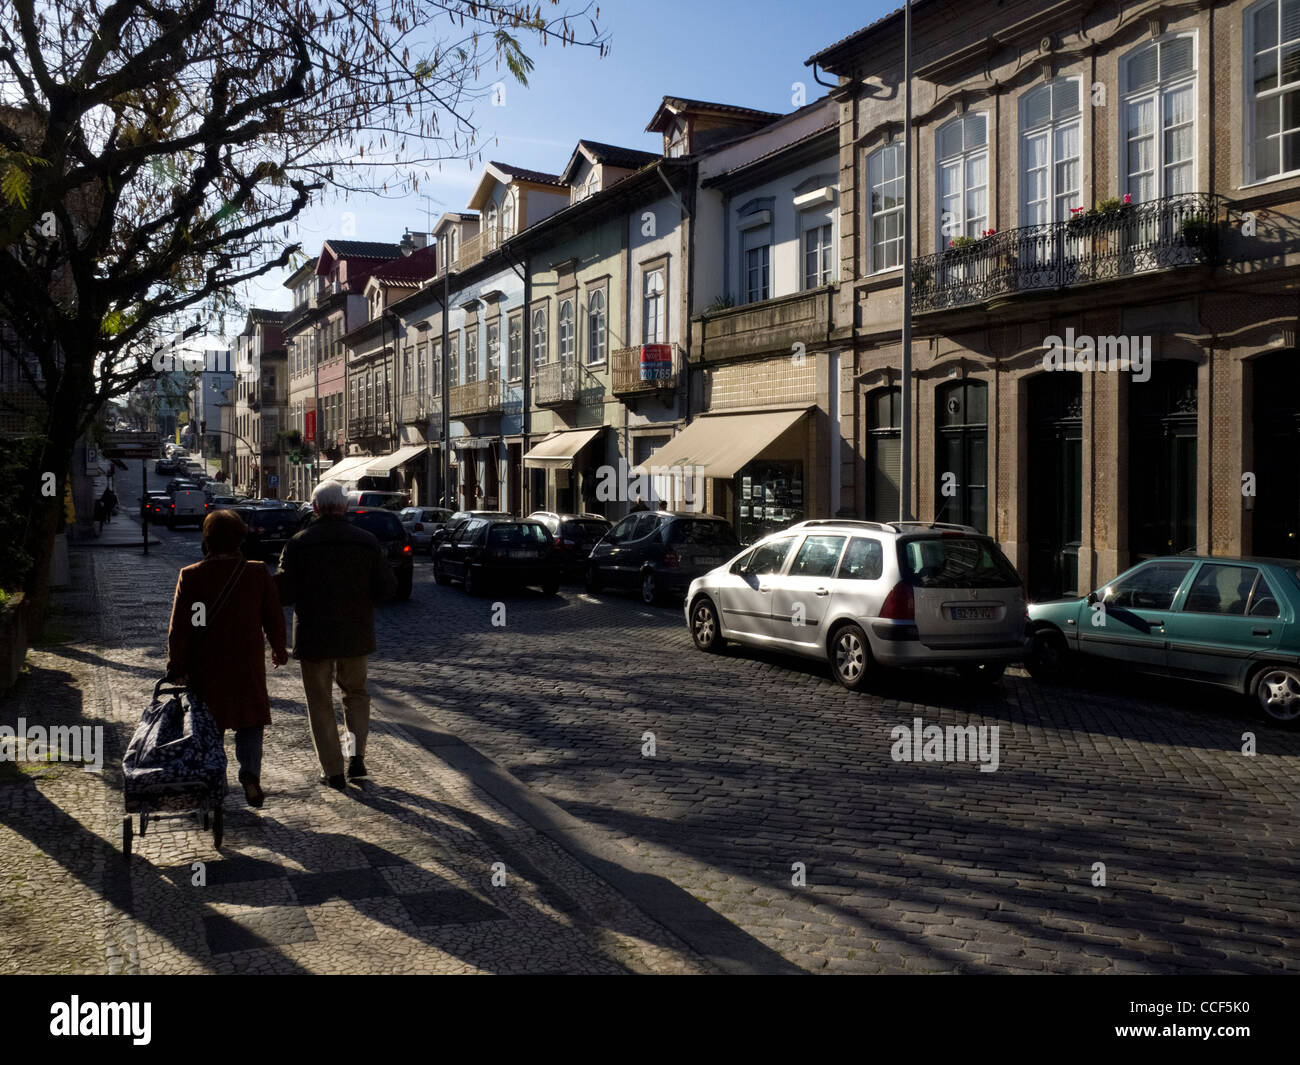 Street scene in Braga, Portugal Stock Photo